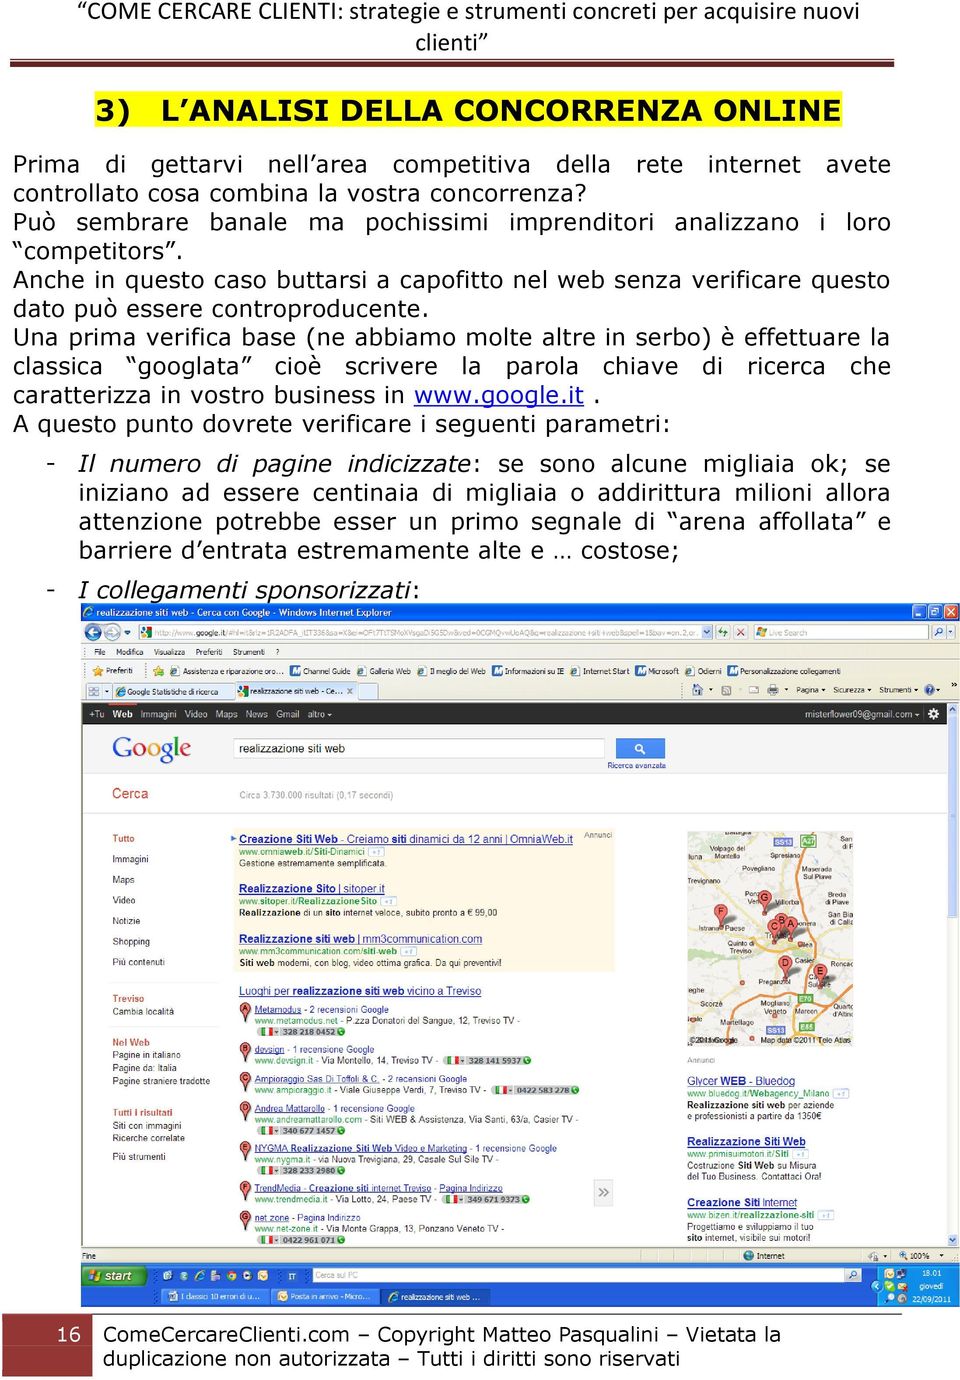 Una prima verifica base (ne abbiamo molte altre in serbo) è effettuare la classica googlata cioè scrivere la parola chiave di ricerca che caratterizza in vostro business in www.google.it.